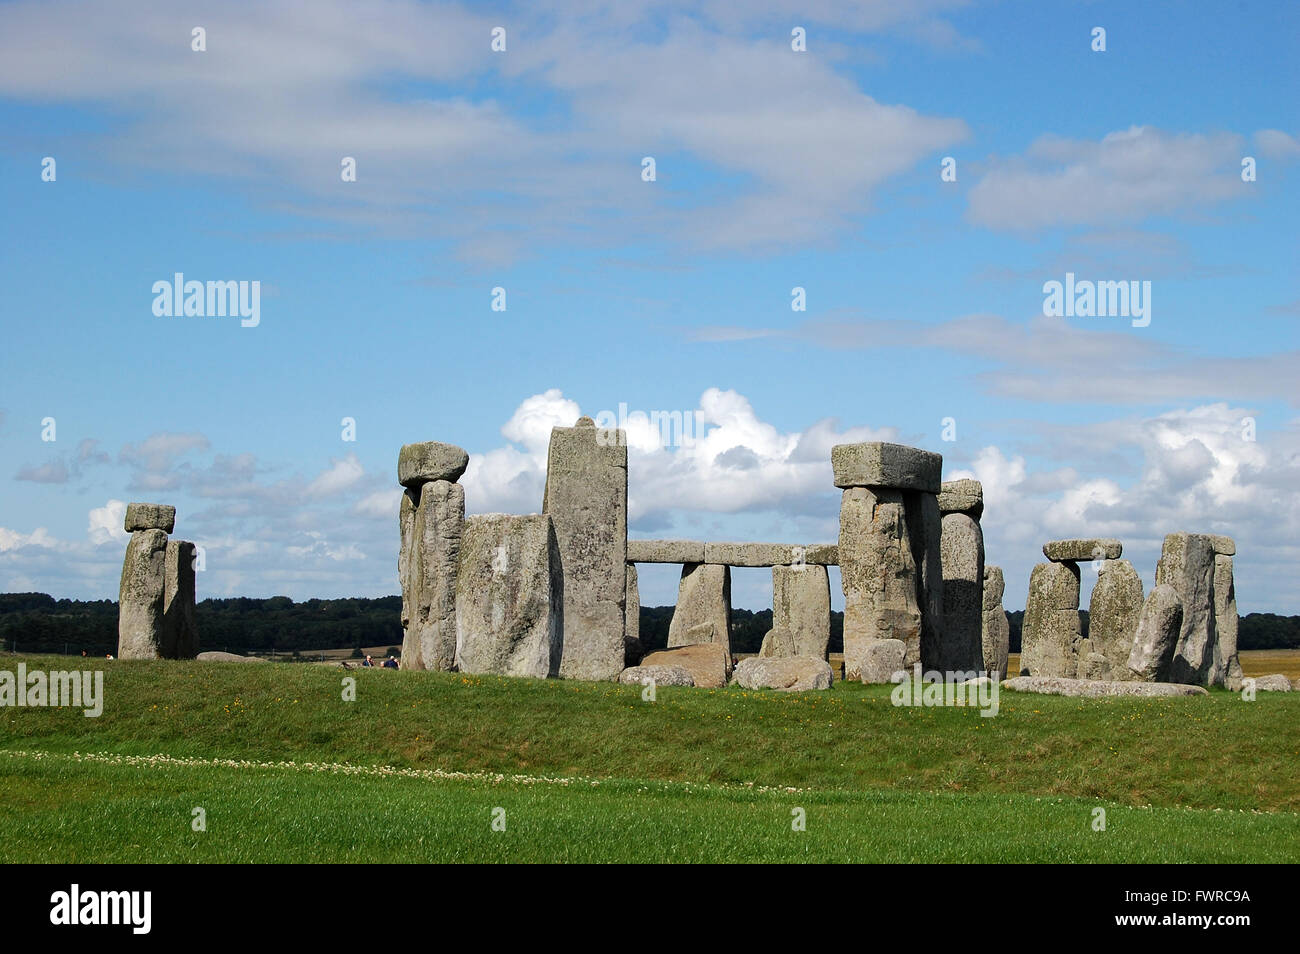 Le cercle de pierre à Stonehenge, a l'air magnifique, sous un ciel bleu avec des nuages blancs moelleux, England, UK Banque D'Images